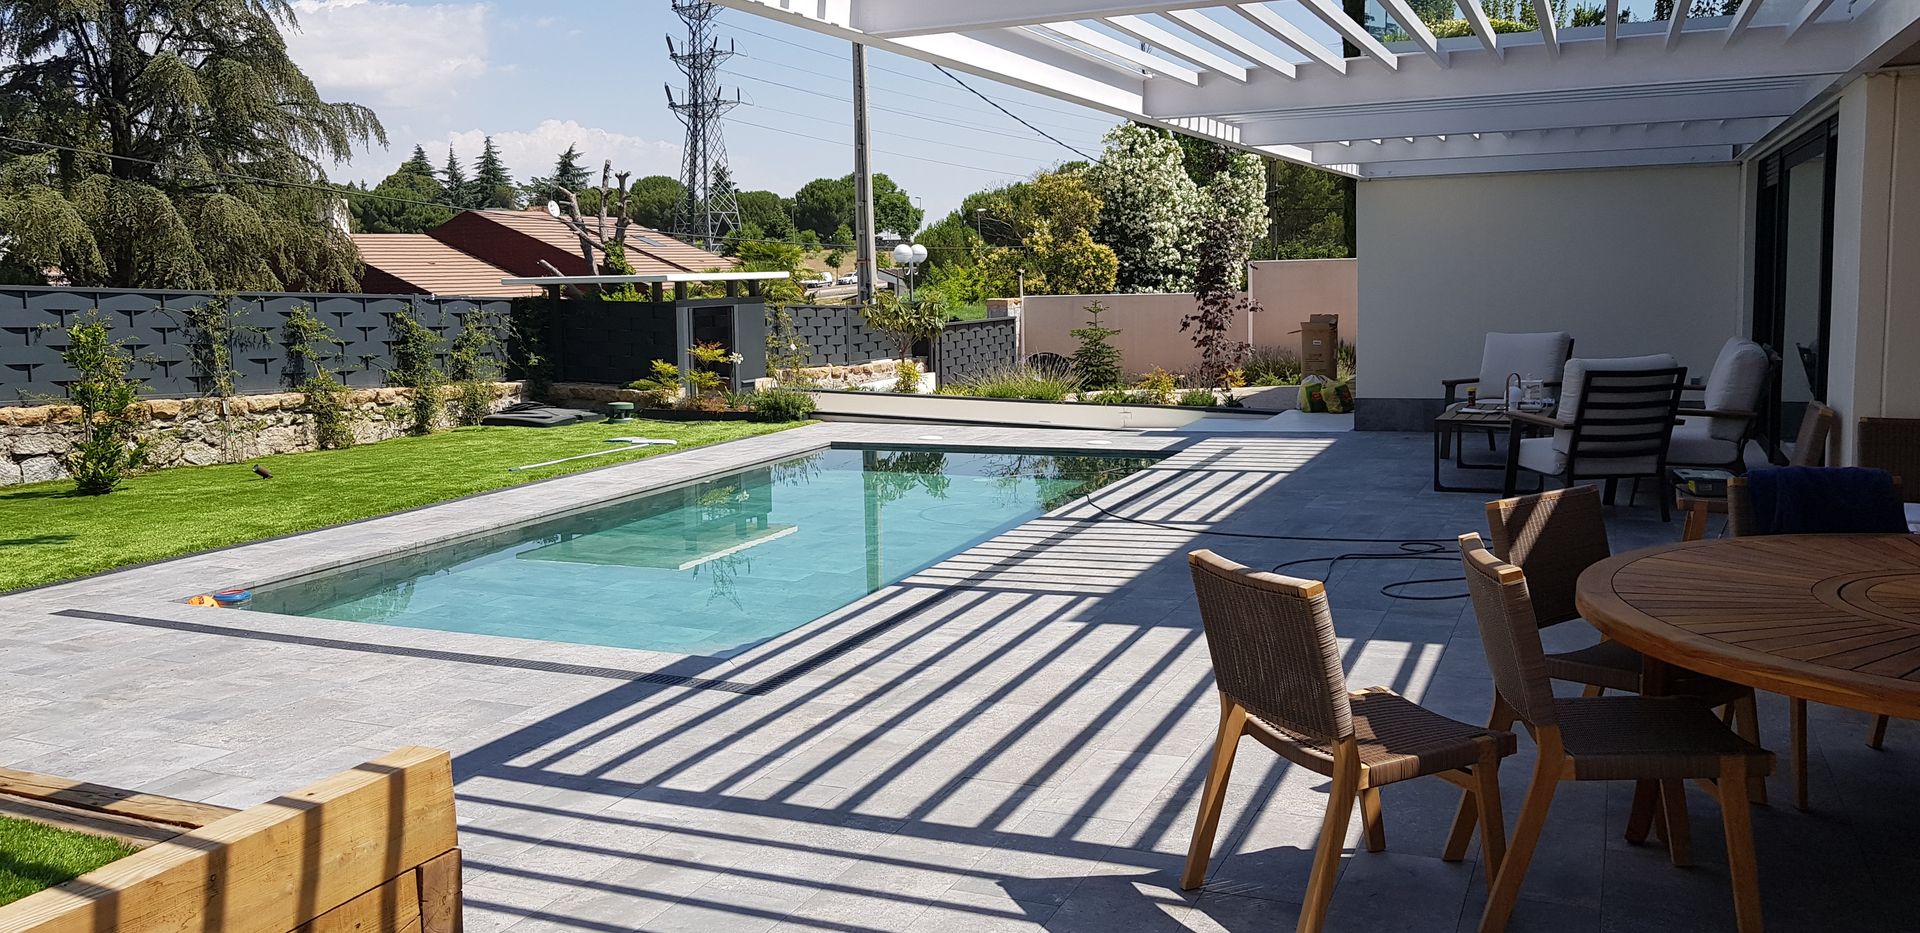 Vivienda modular personalizada en Las Rozas, Madrid, MODULAR HOME MODULAR HOME Garden Pool Concrete